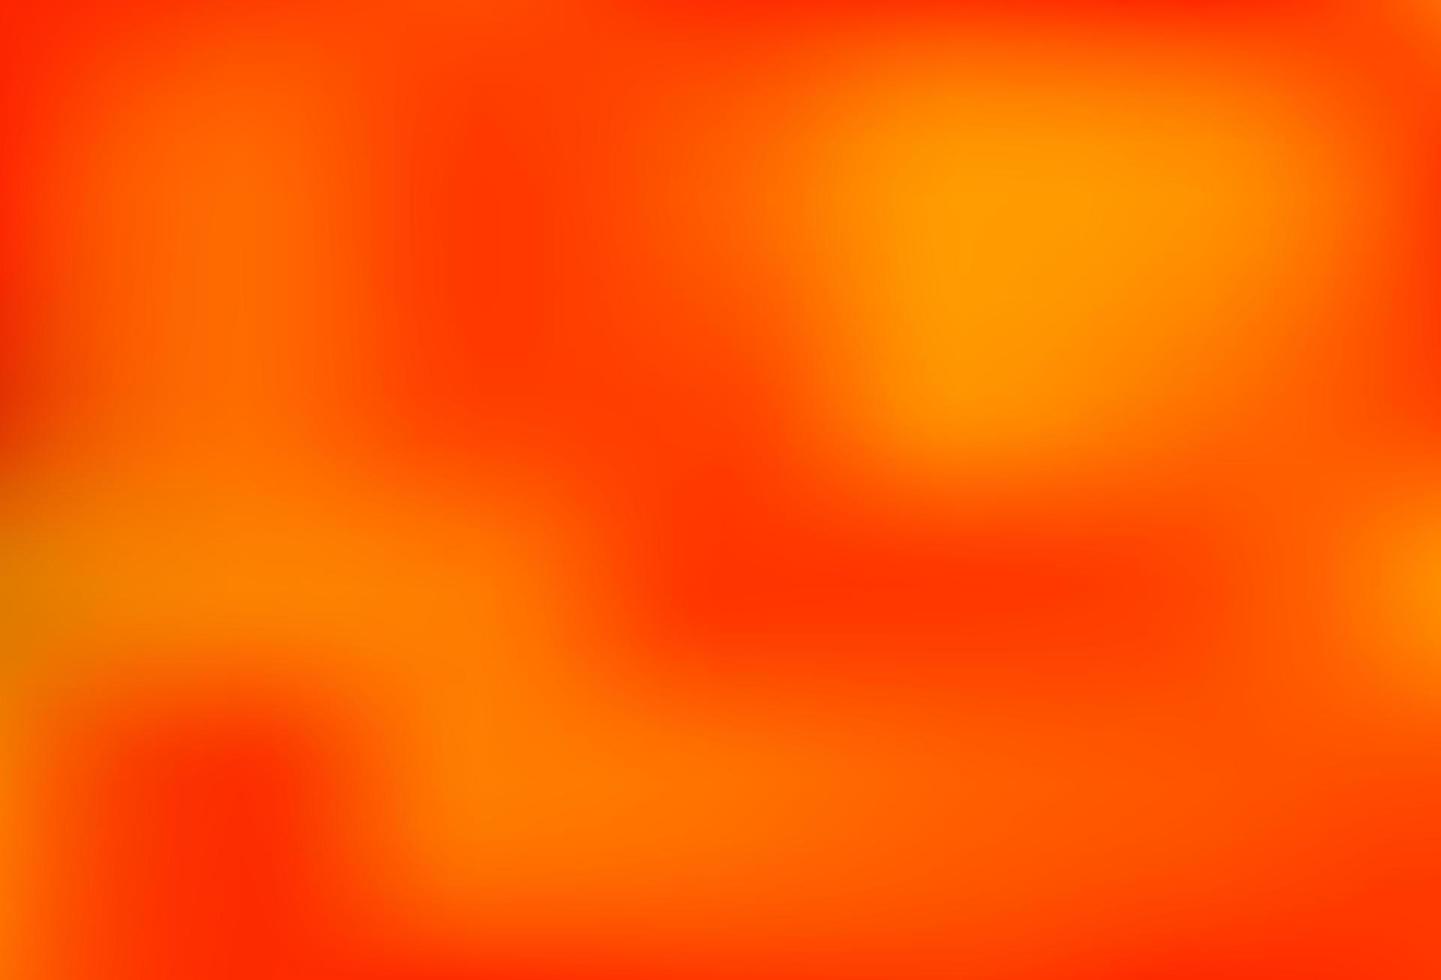 Light Orange vector modern elegant template.